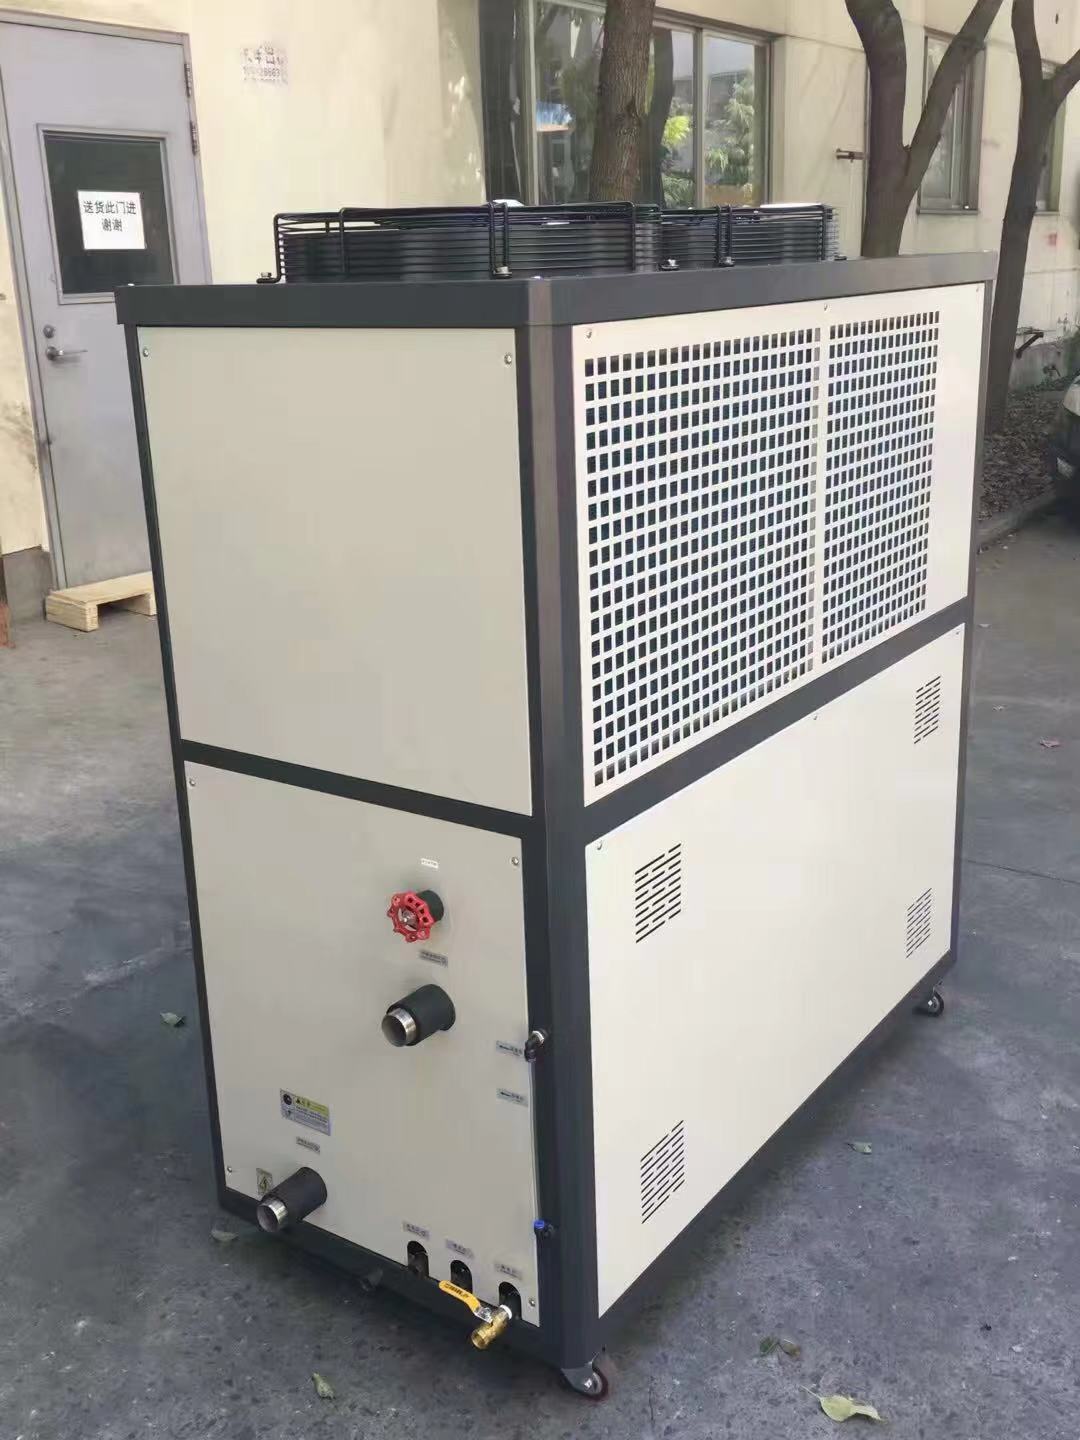 苏州冷水机组生产厂家 制冷设备 冷冻机组 冰水机厂家 工业冷冻机 冷水机组 德玛克冷暖设备生产厂家